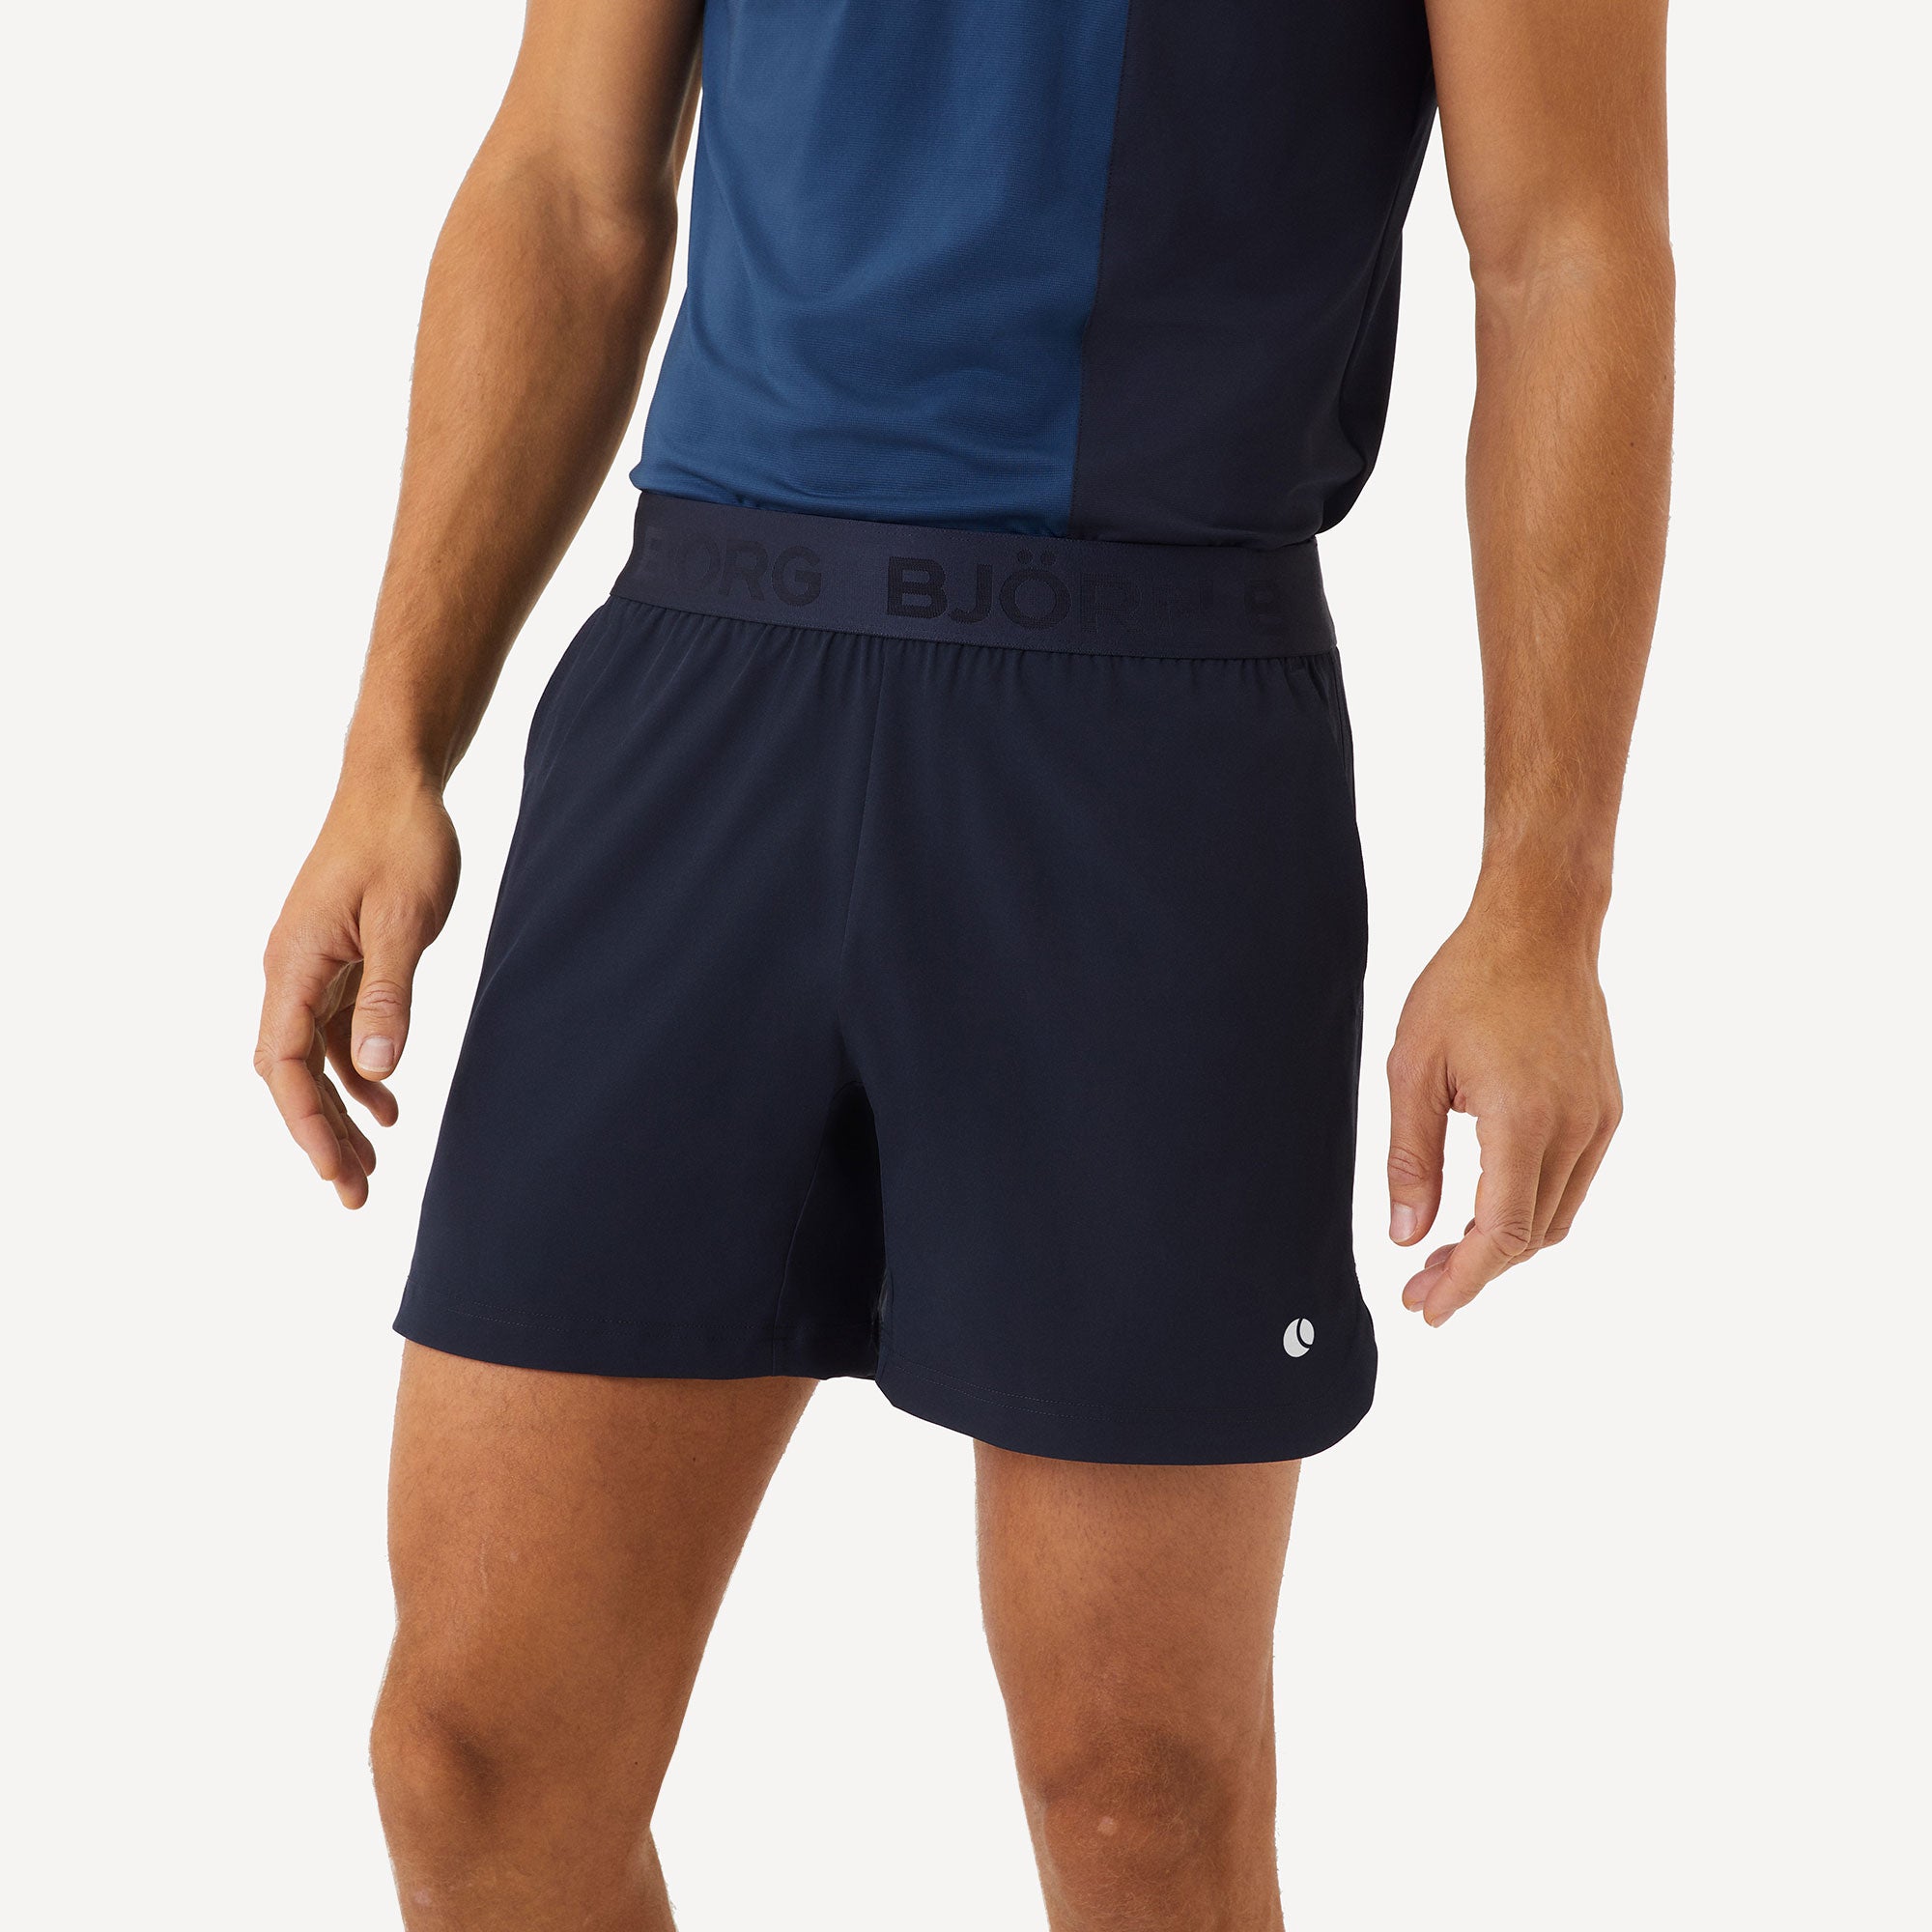 Björn Borg Ace Men's Short Tennis Shorts - Dark Blue (1)